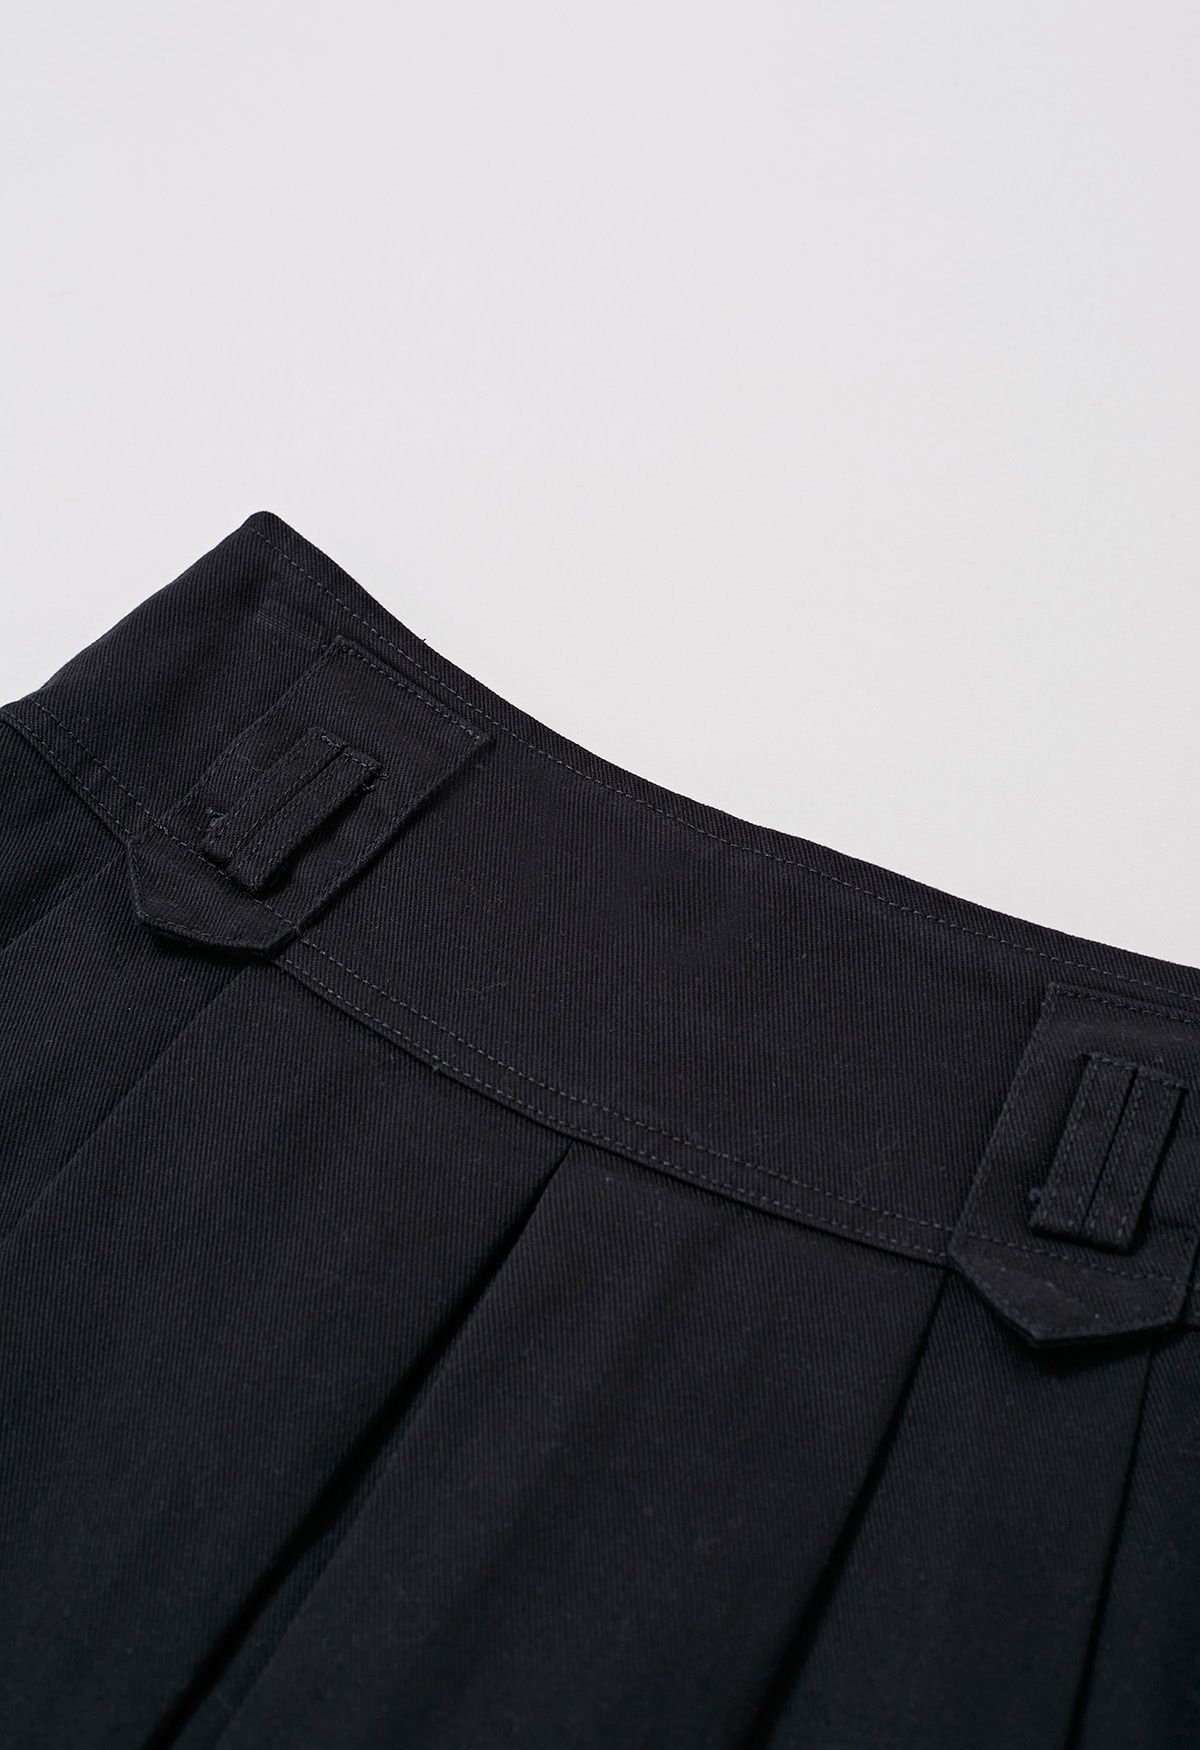 Minifalda vaquera clásica plisada con cinturón en negro